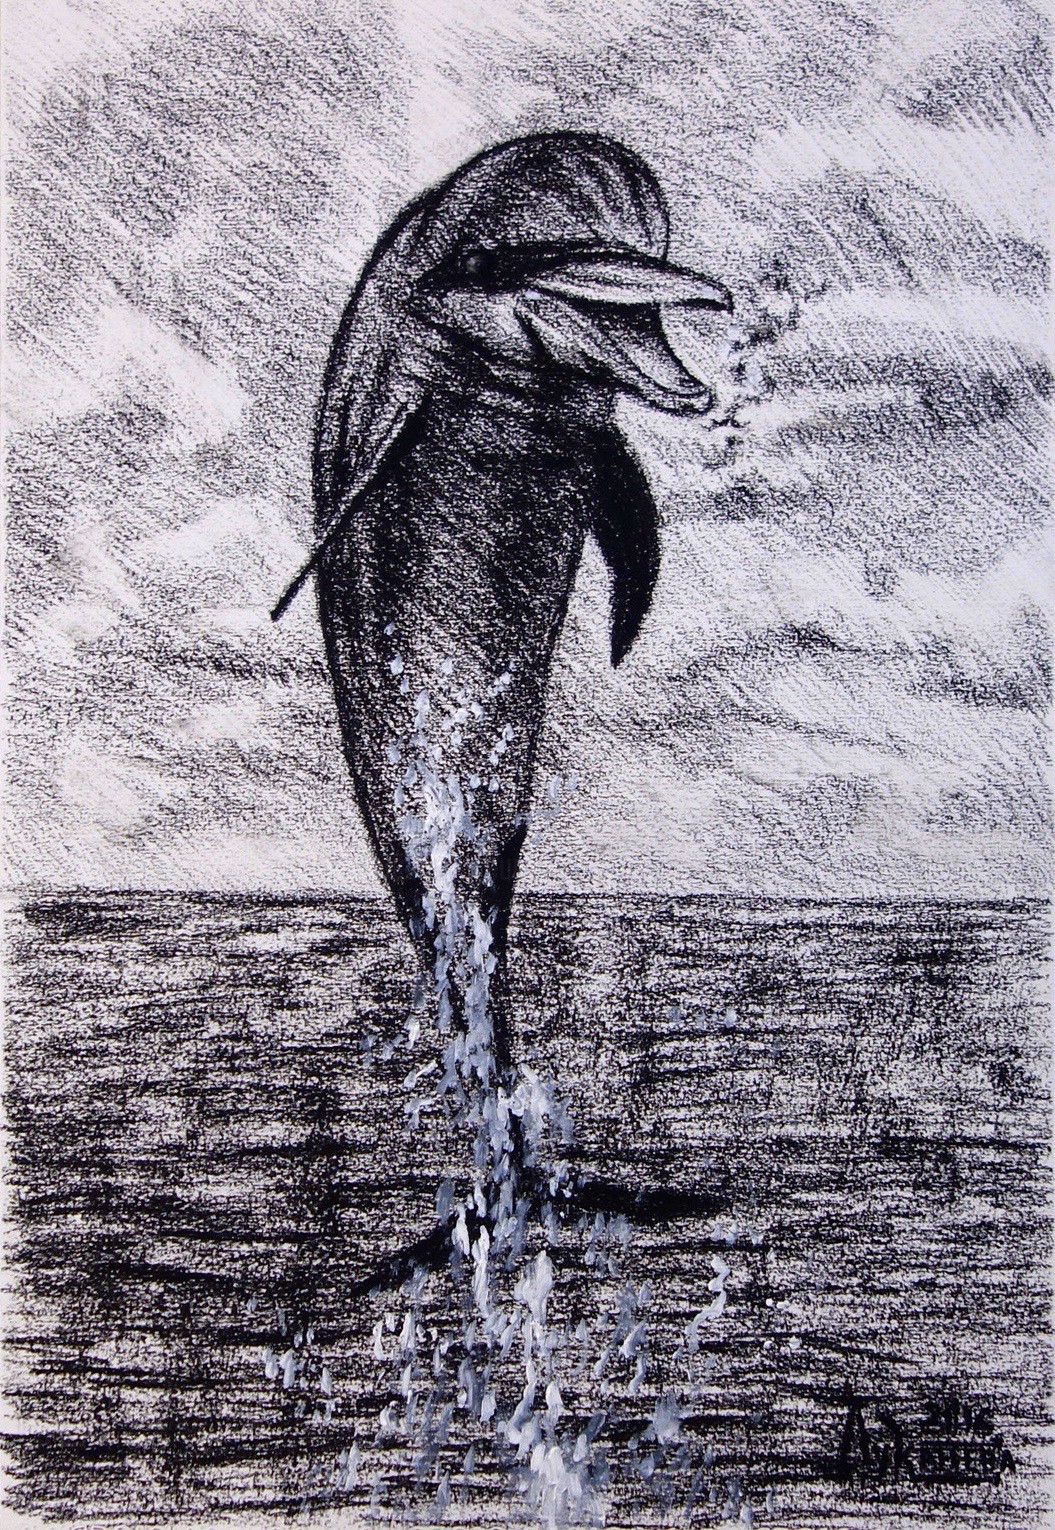 Графический рисунок дельфина